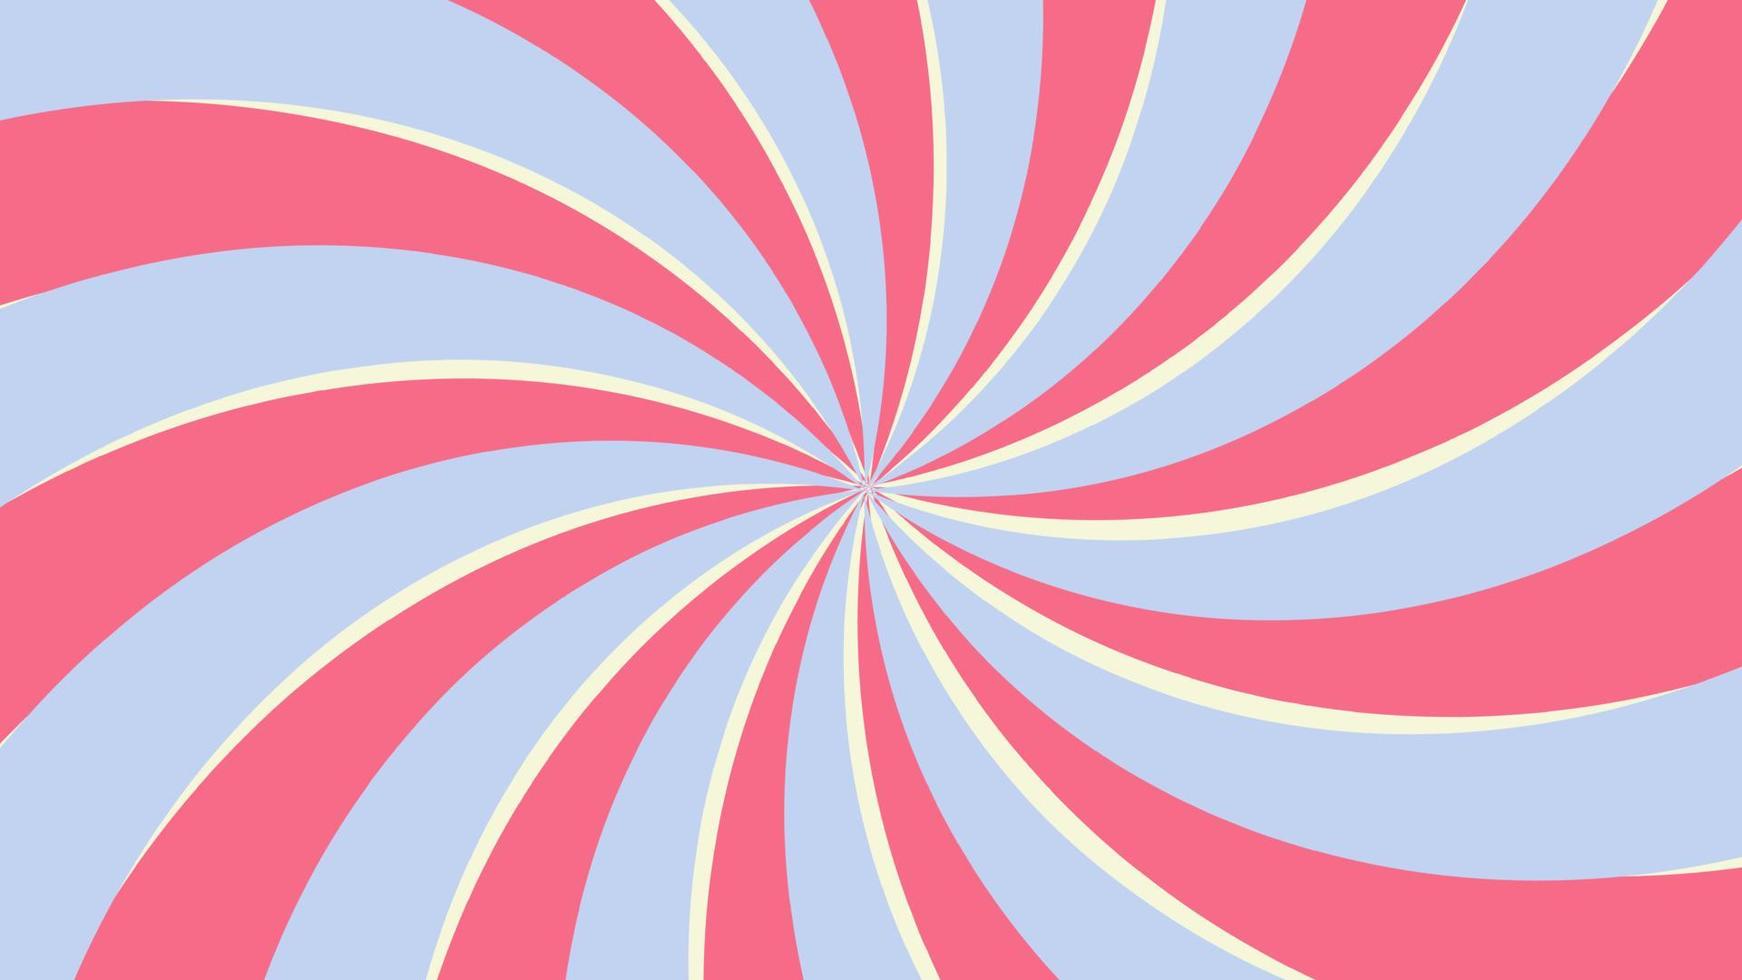 ästhetische retro rosa und blaue spiralgestreifte hintergrundillustration, perfekt für tapeten, hintergrund, postkarte, hintergrund, banner für ihr design vektor